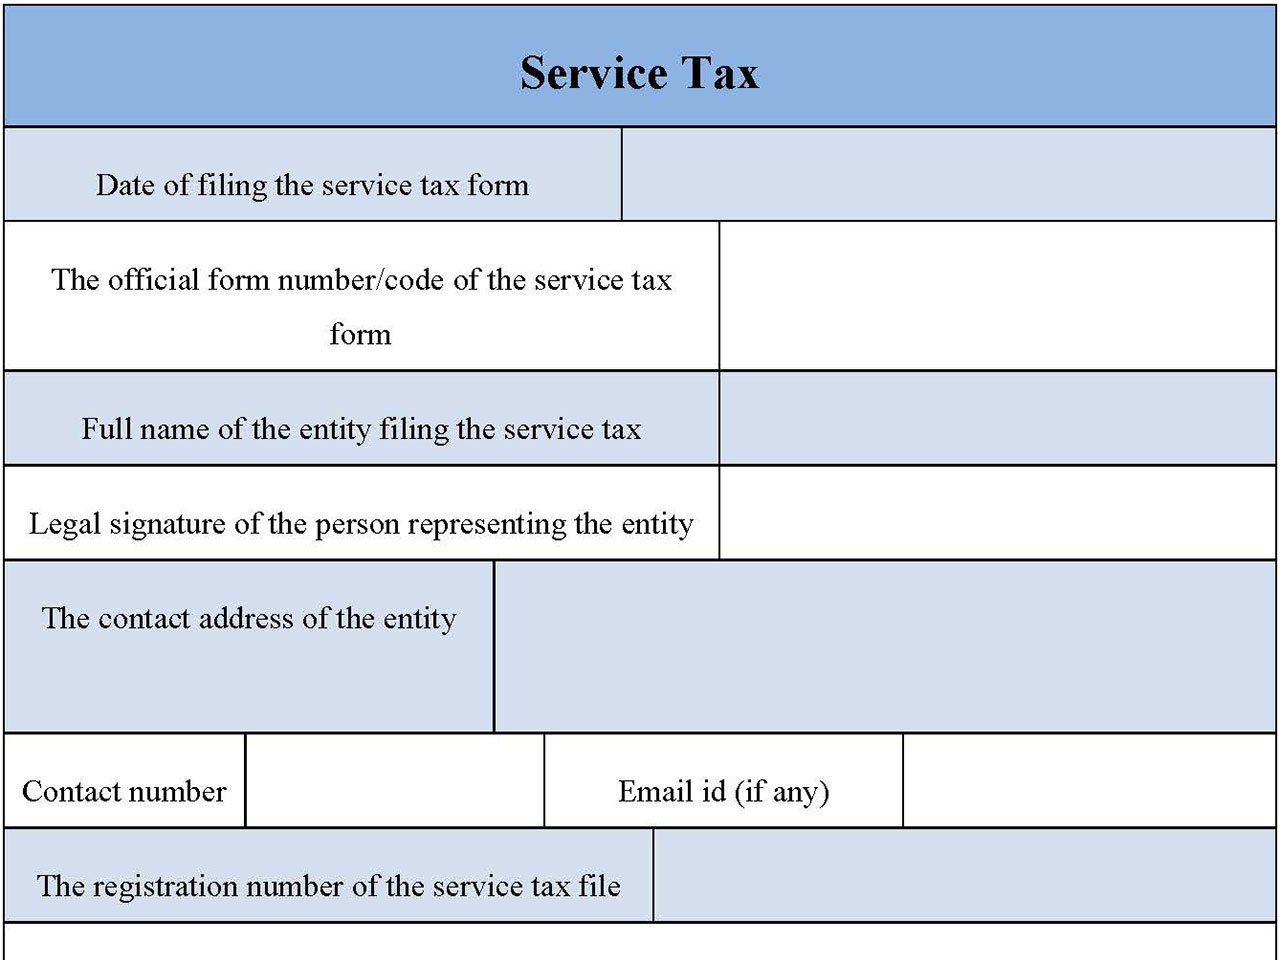 Service Tax Form